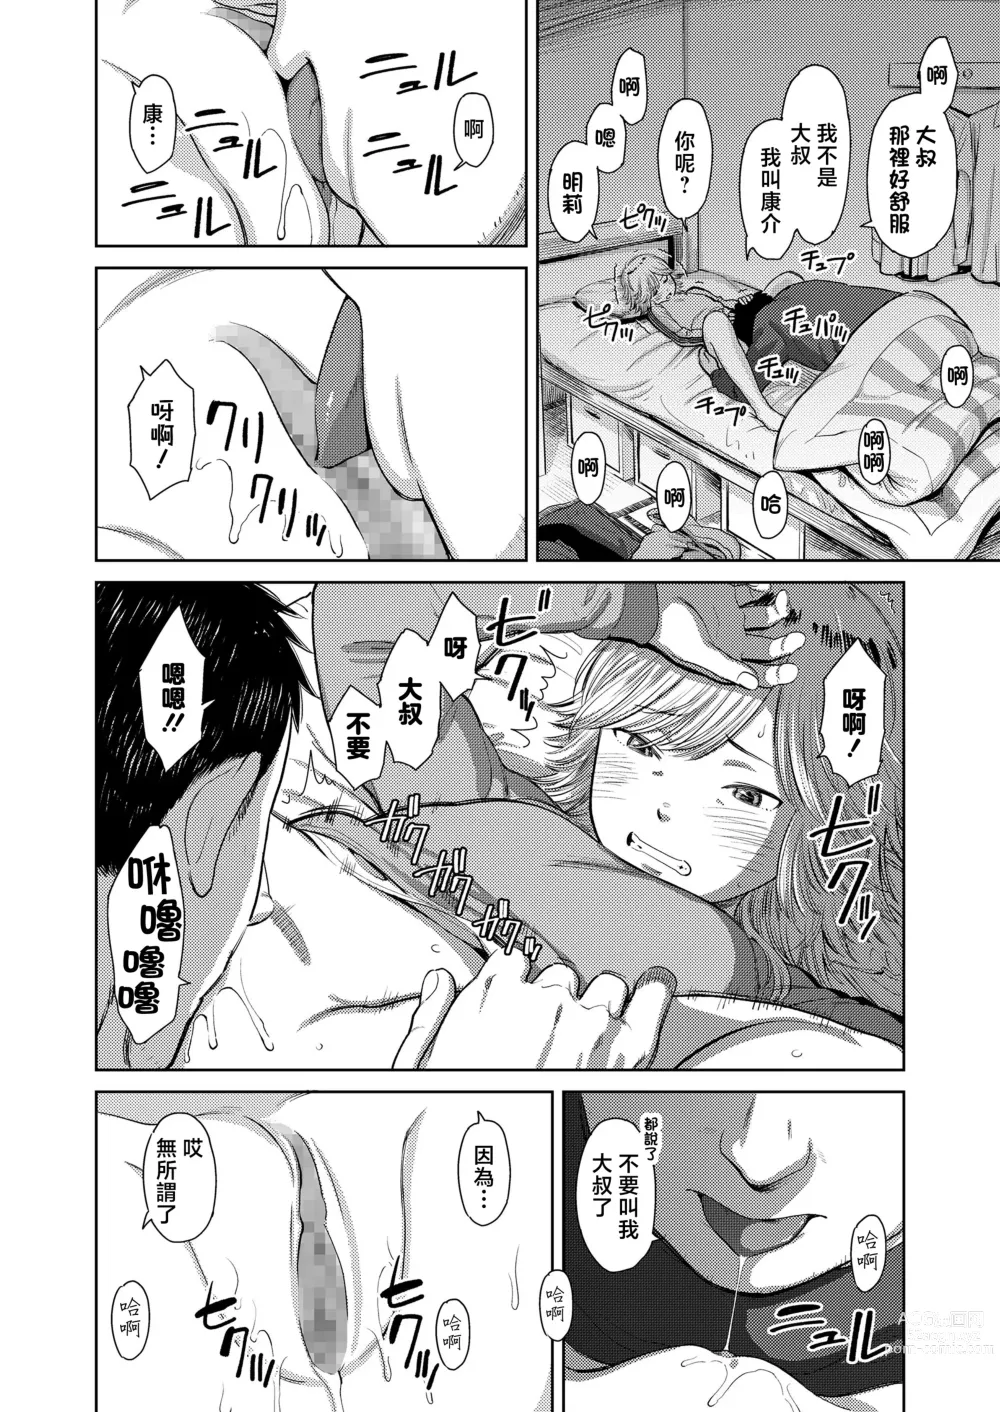 Page 14 of manga Yoru ni Houkou